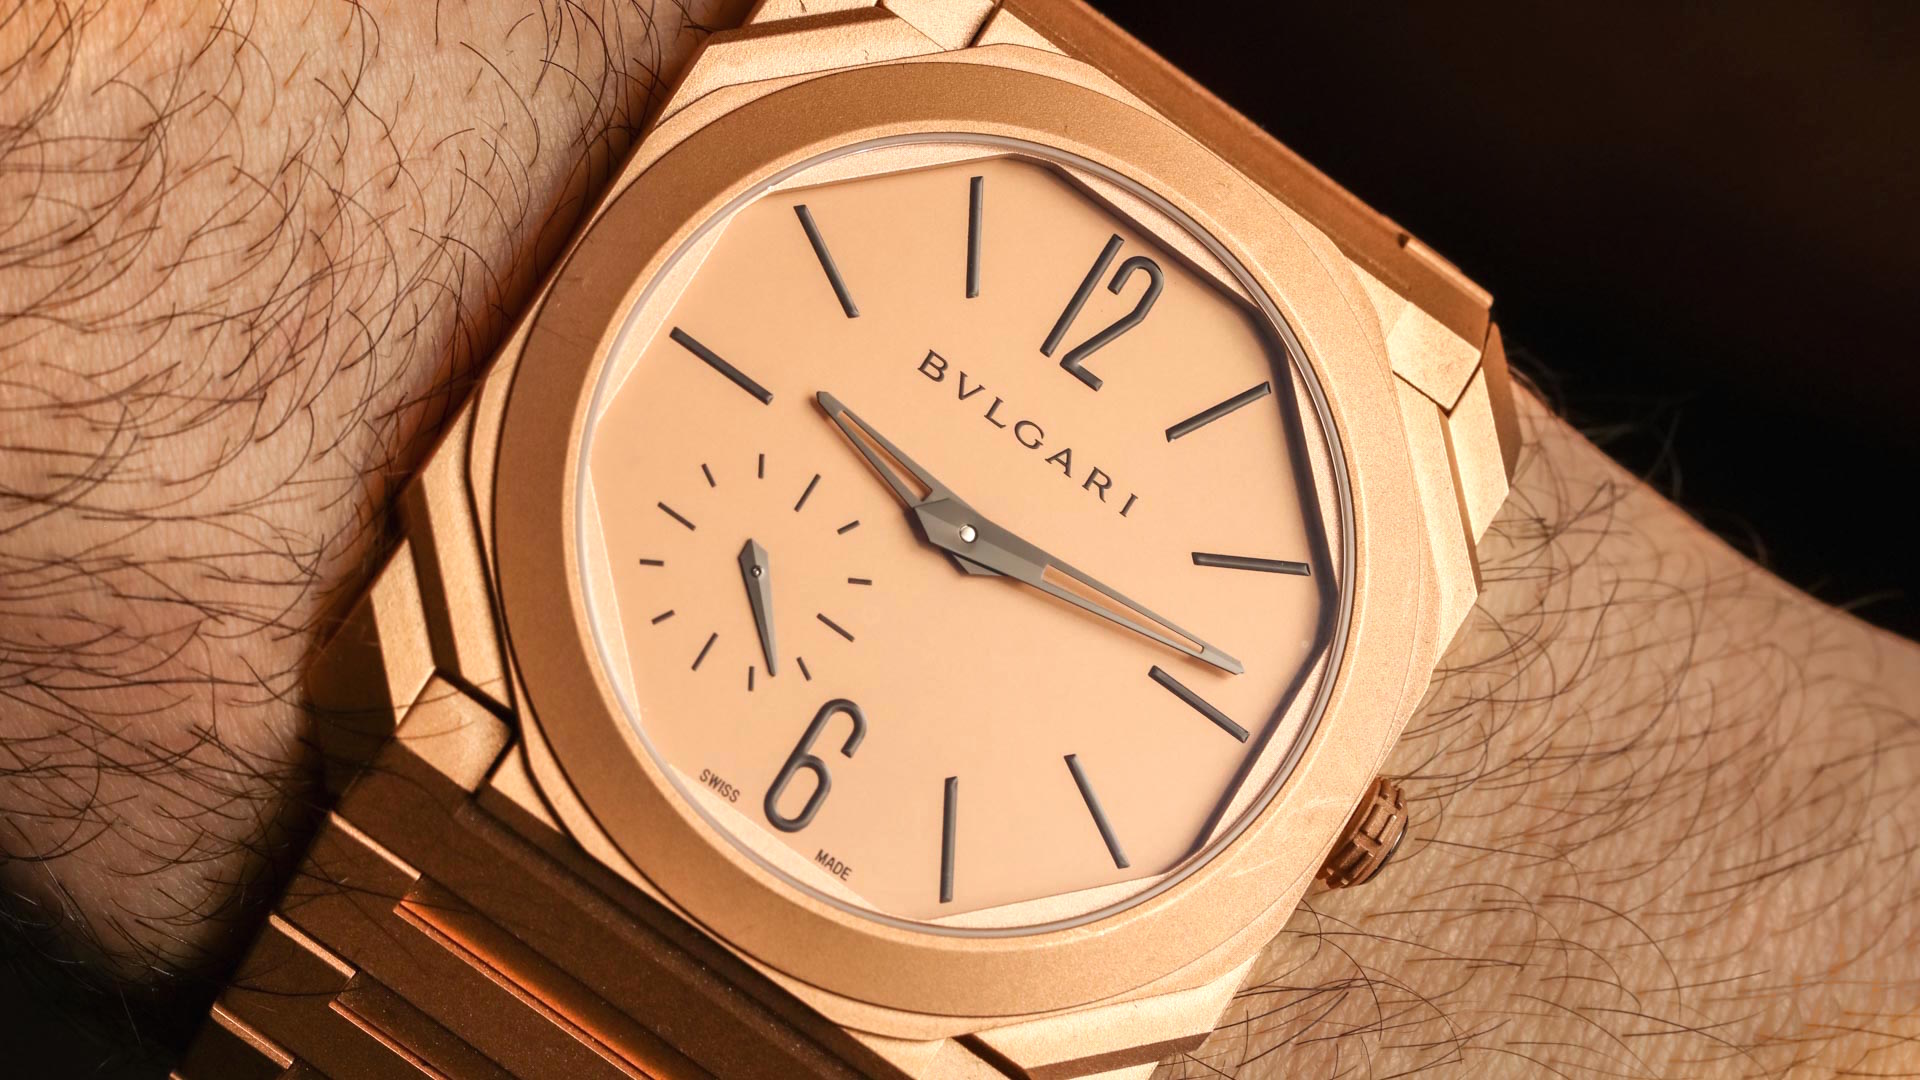 bvlgari gold watch price